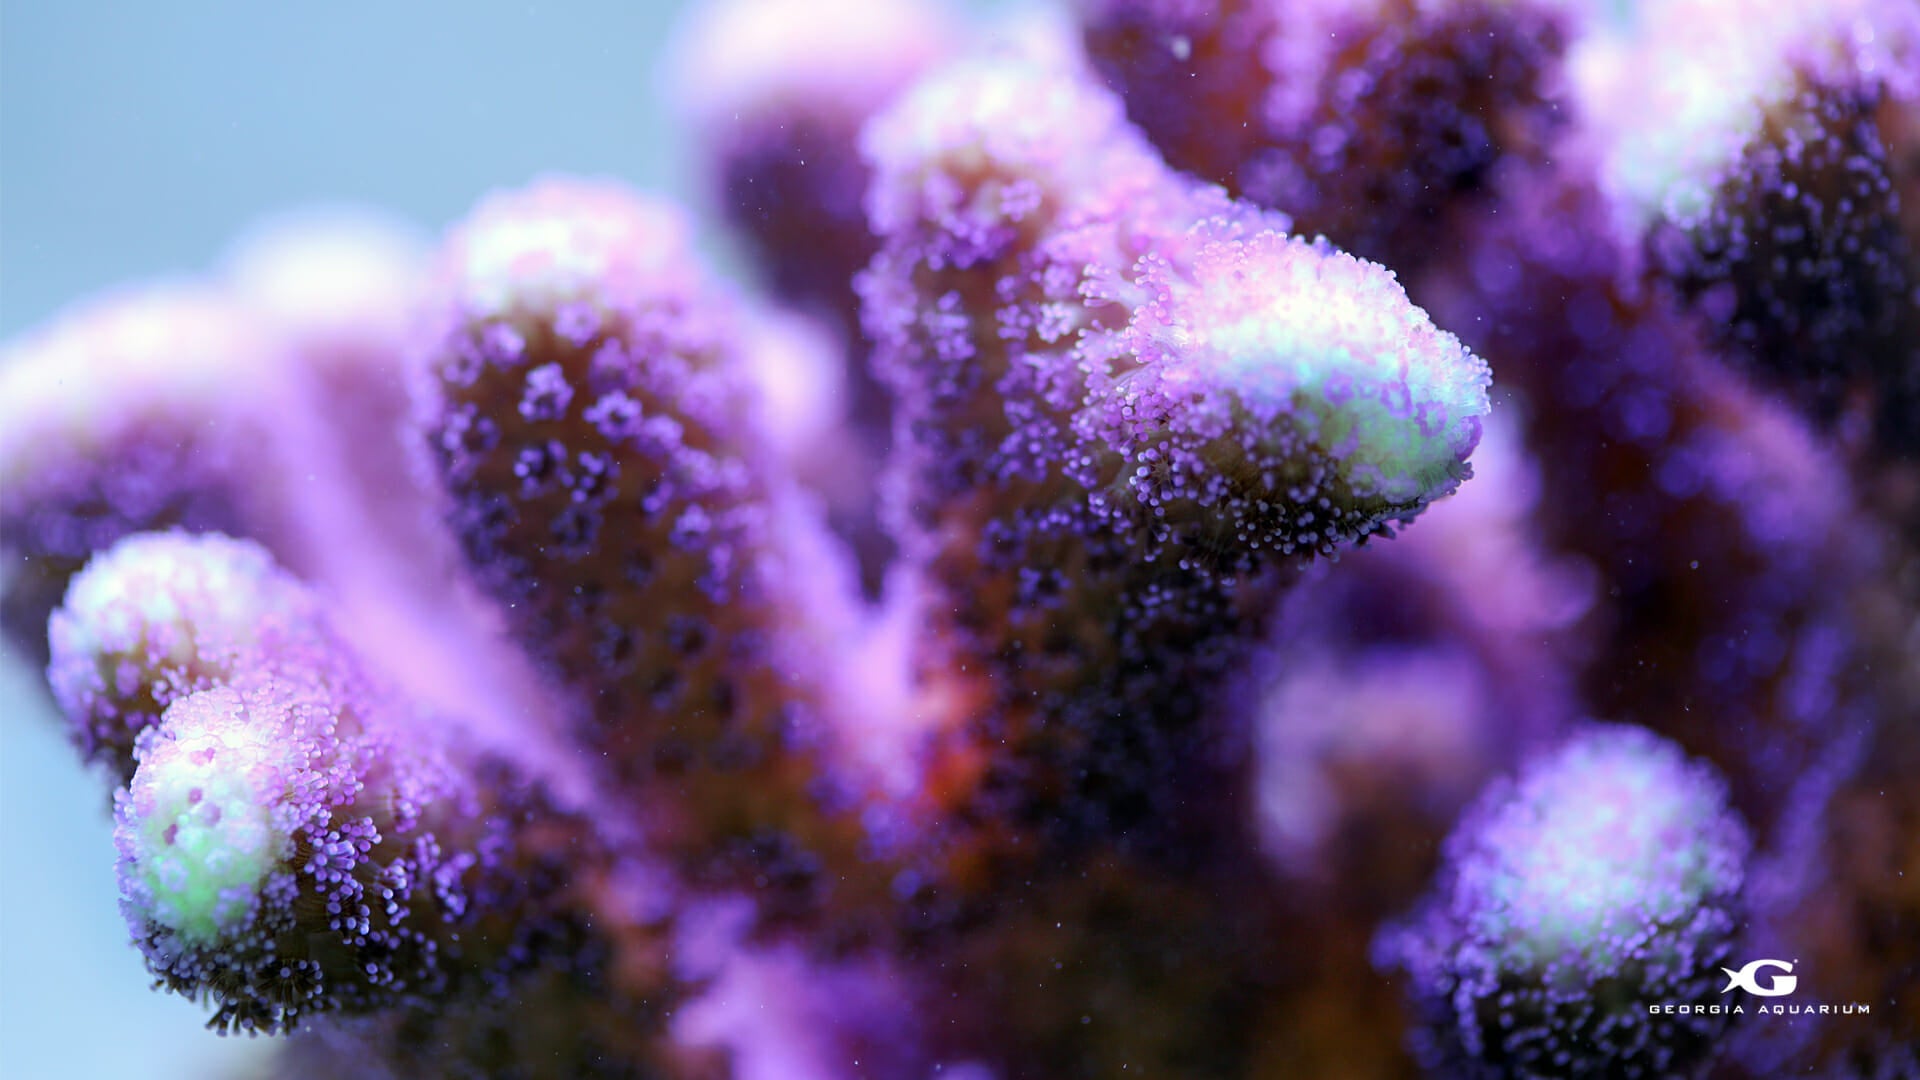 Georgia Aquarium Coral Reef Awareness Week